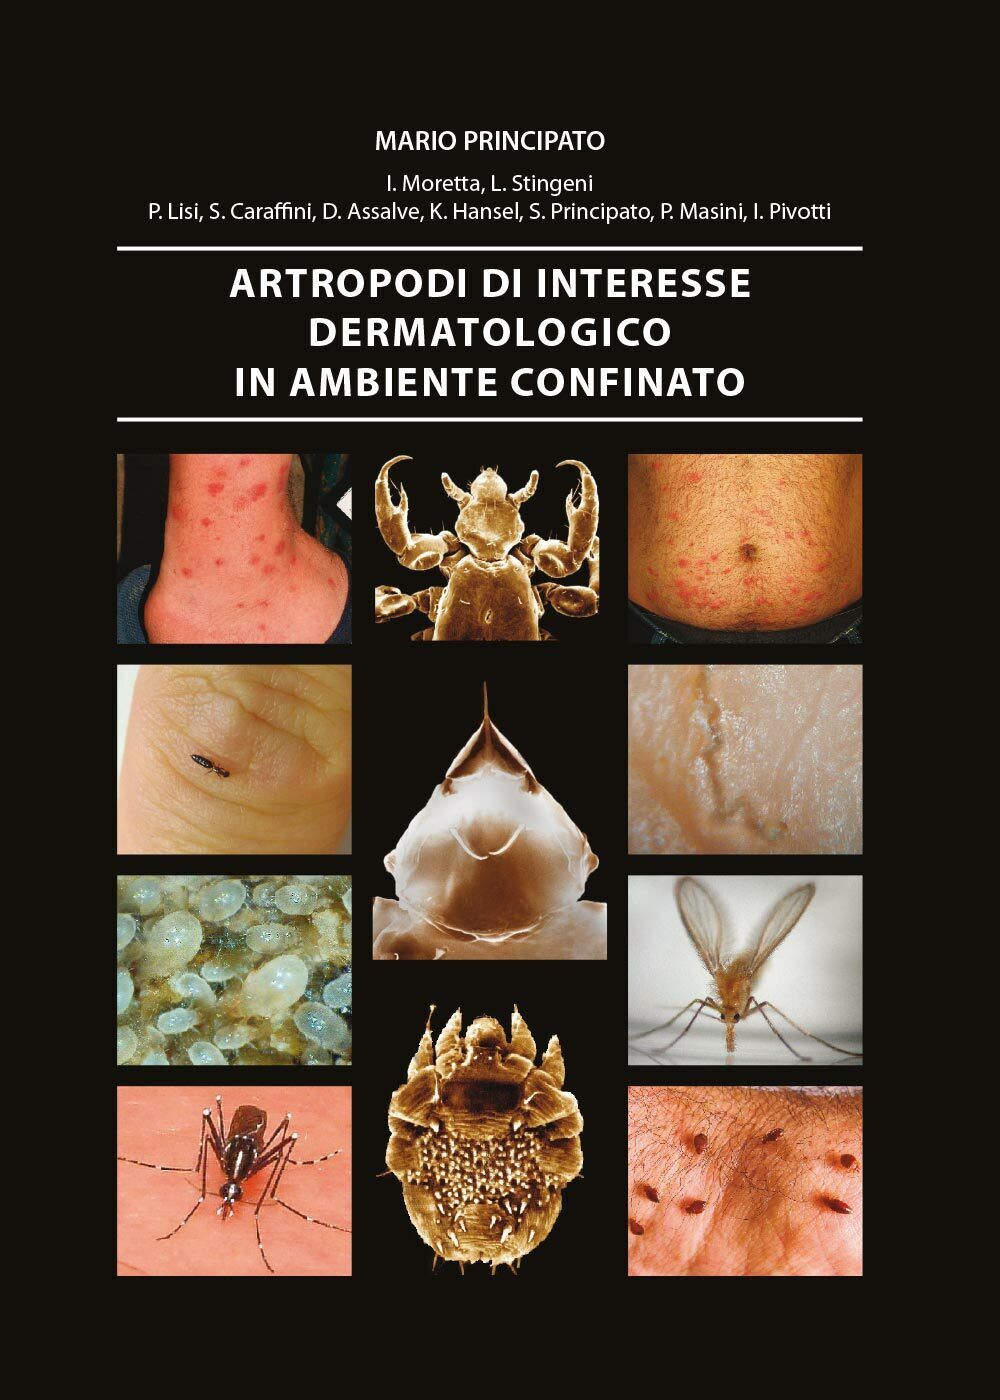 Artropodi di interesse dermatologico in ambiente confinato di Aa.vv.,  2014,  Un